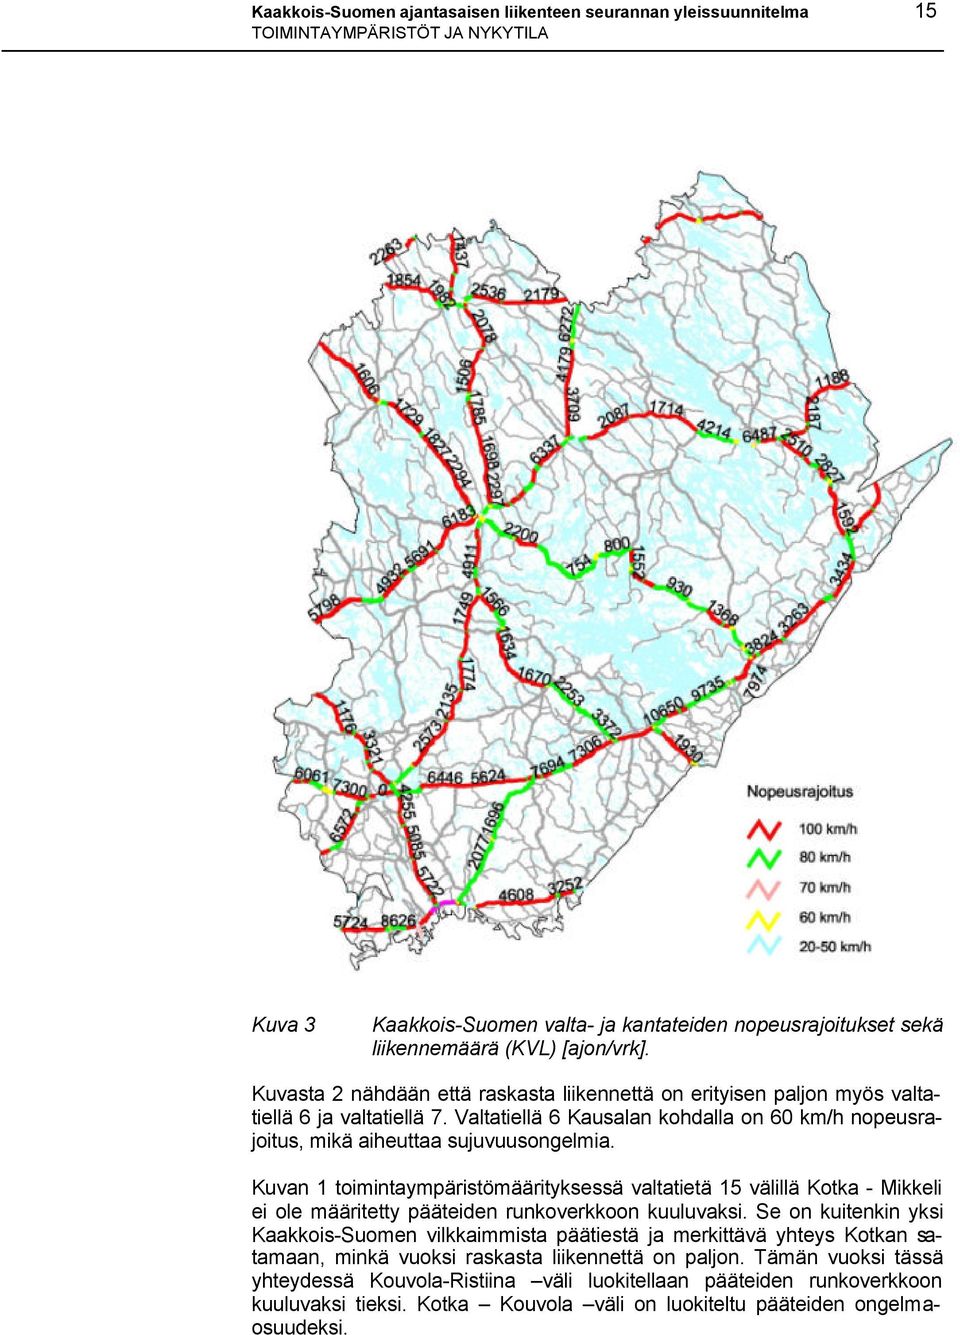 Kuvan 1 toimintaympäristömäärityksessä valtatietä 15 välillä Kotka - Mikkeli ei ole määritetty pääteiden runkoverkkoon kuuluvaksi.